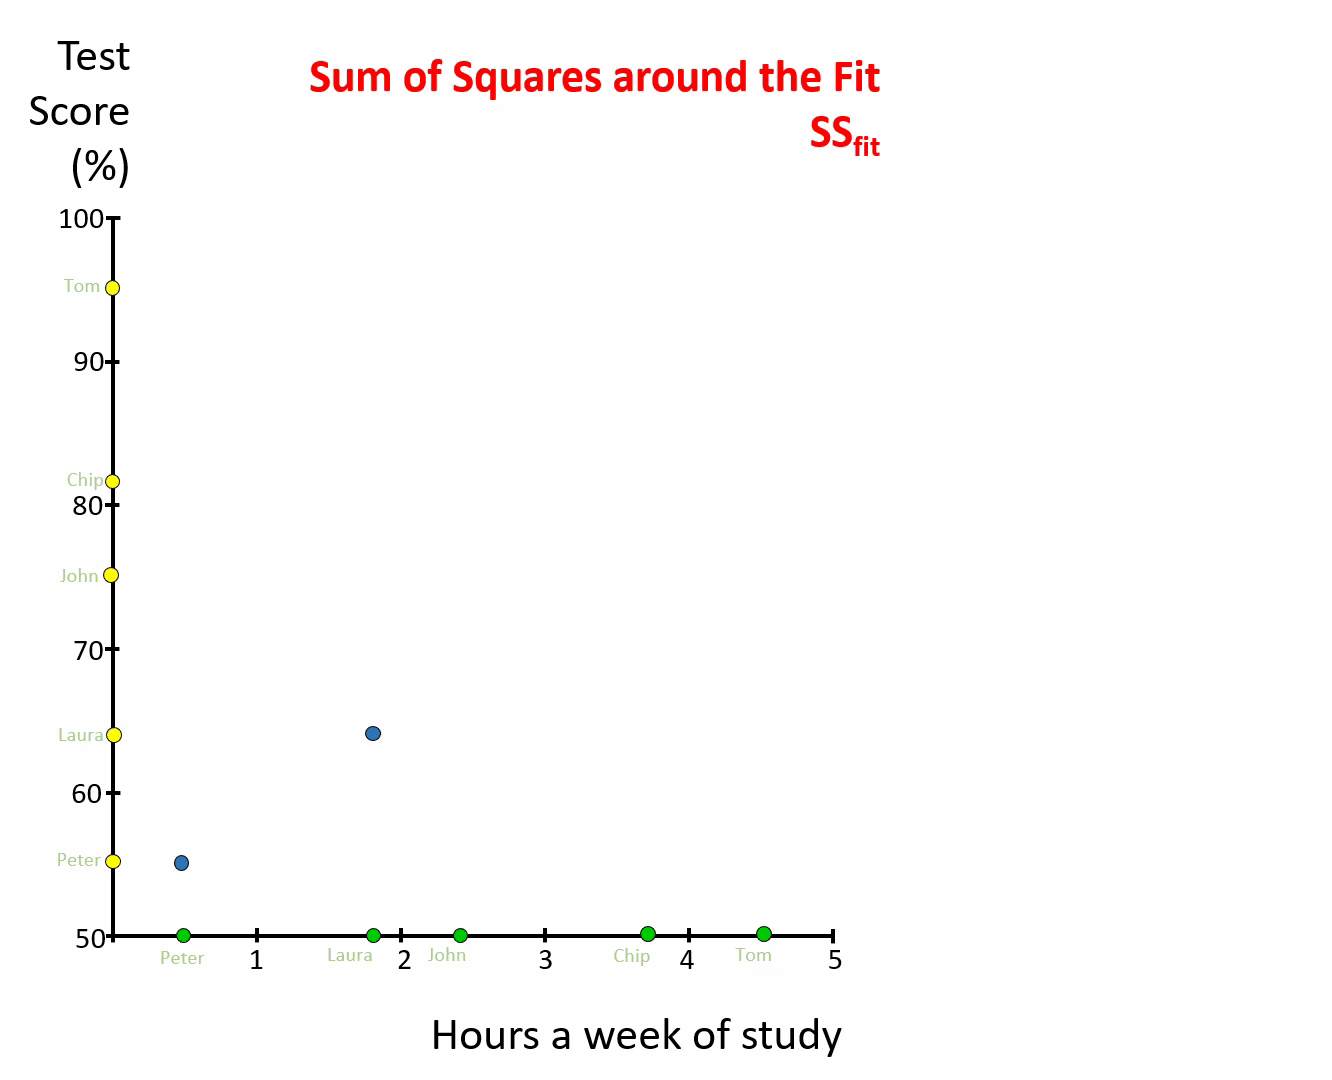 Sum of Squares around the Fit, SSfit